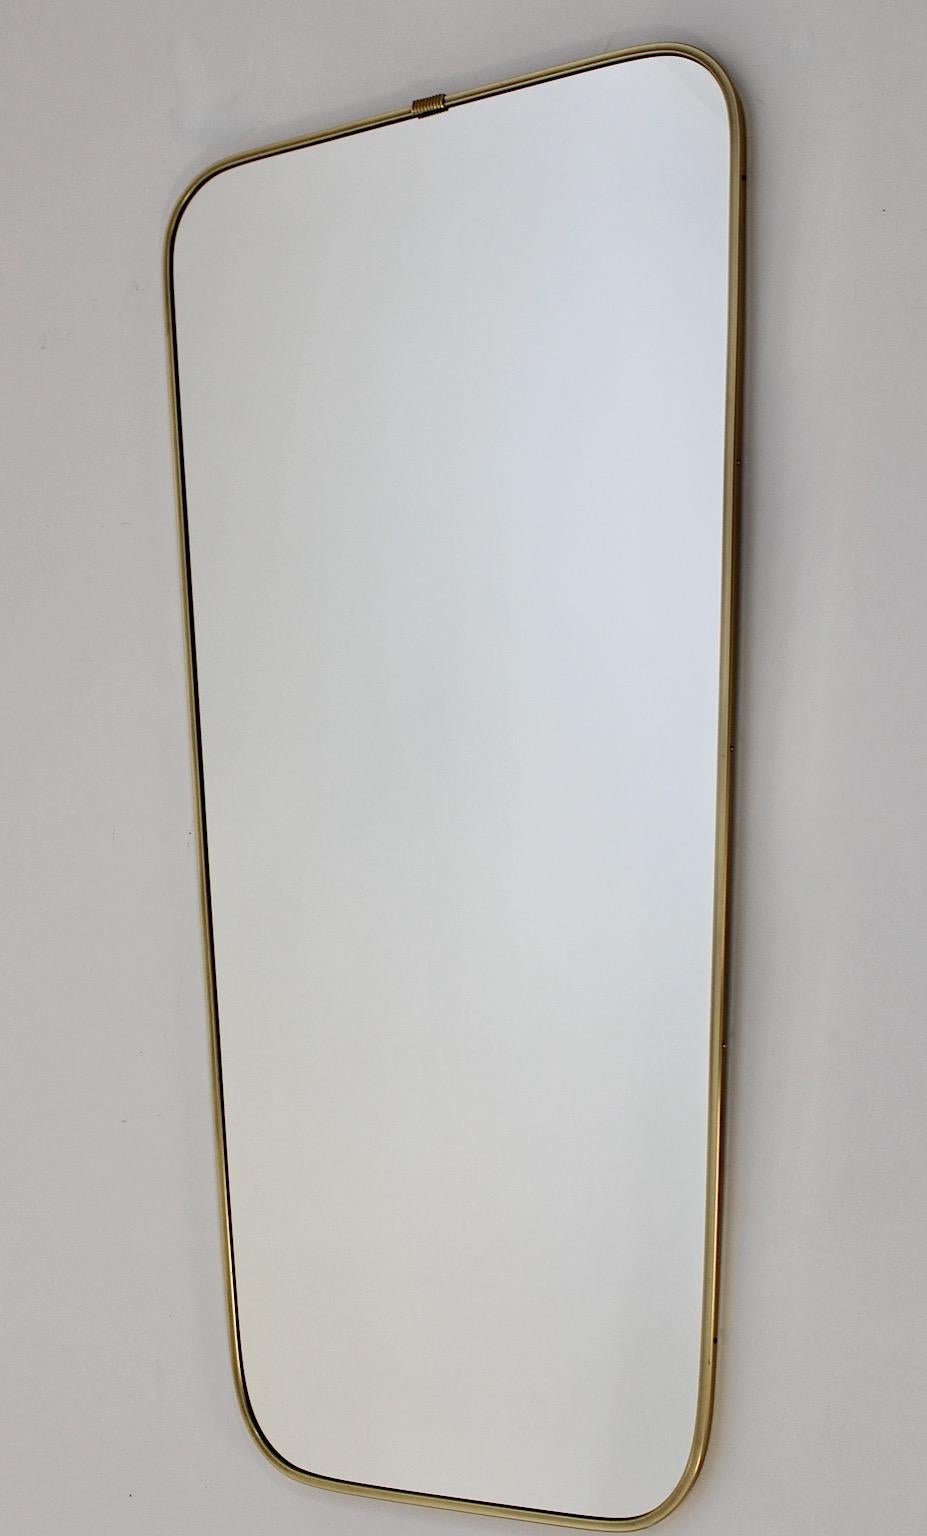 Mid Century Modernist vintage brass full length mirror floor mirror 1950s Italy.
Un superbe miroir de sol vintage moderniste et épuré avec un cadre subtil en laiton doré.
de forme légèrement conique.
Ce miroir pleine longueur des années 1950